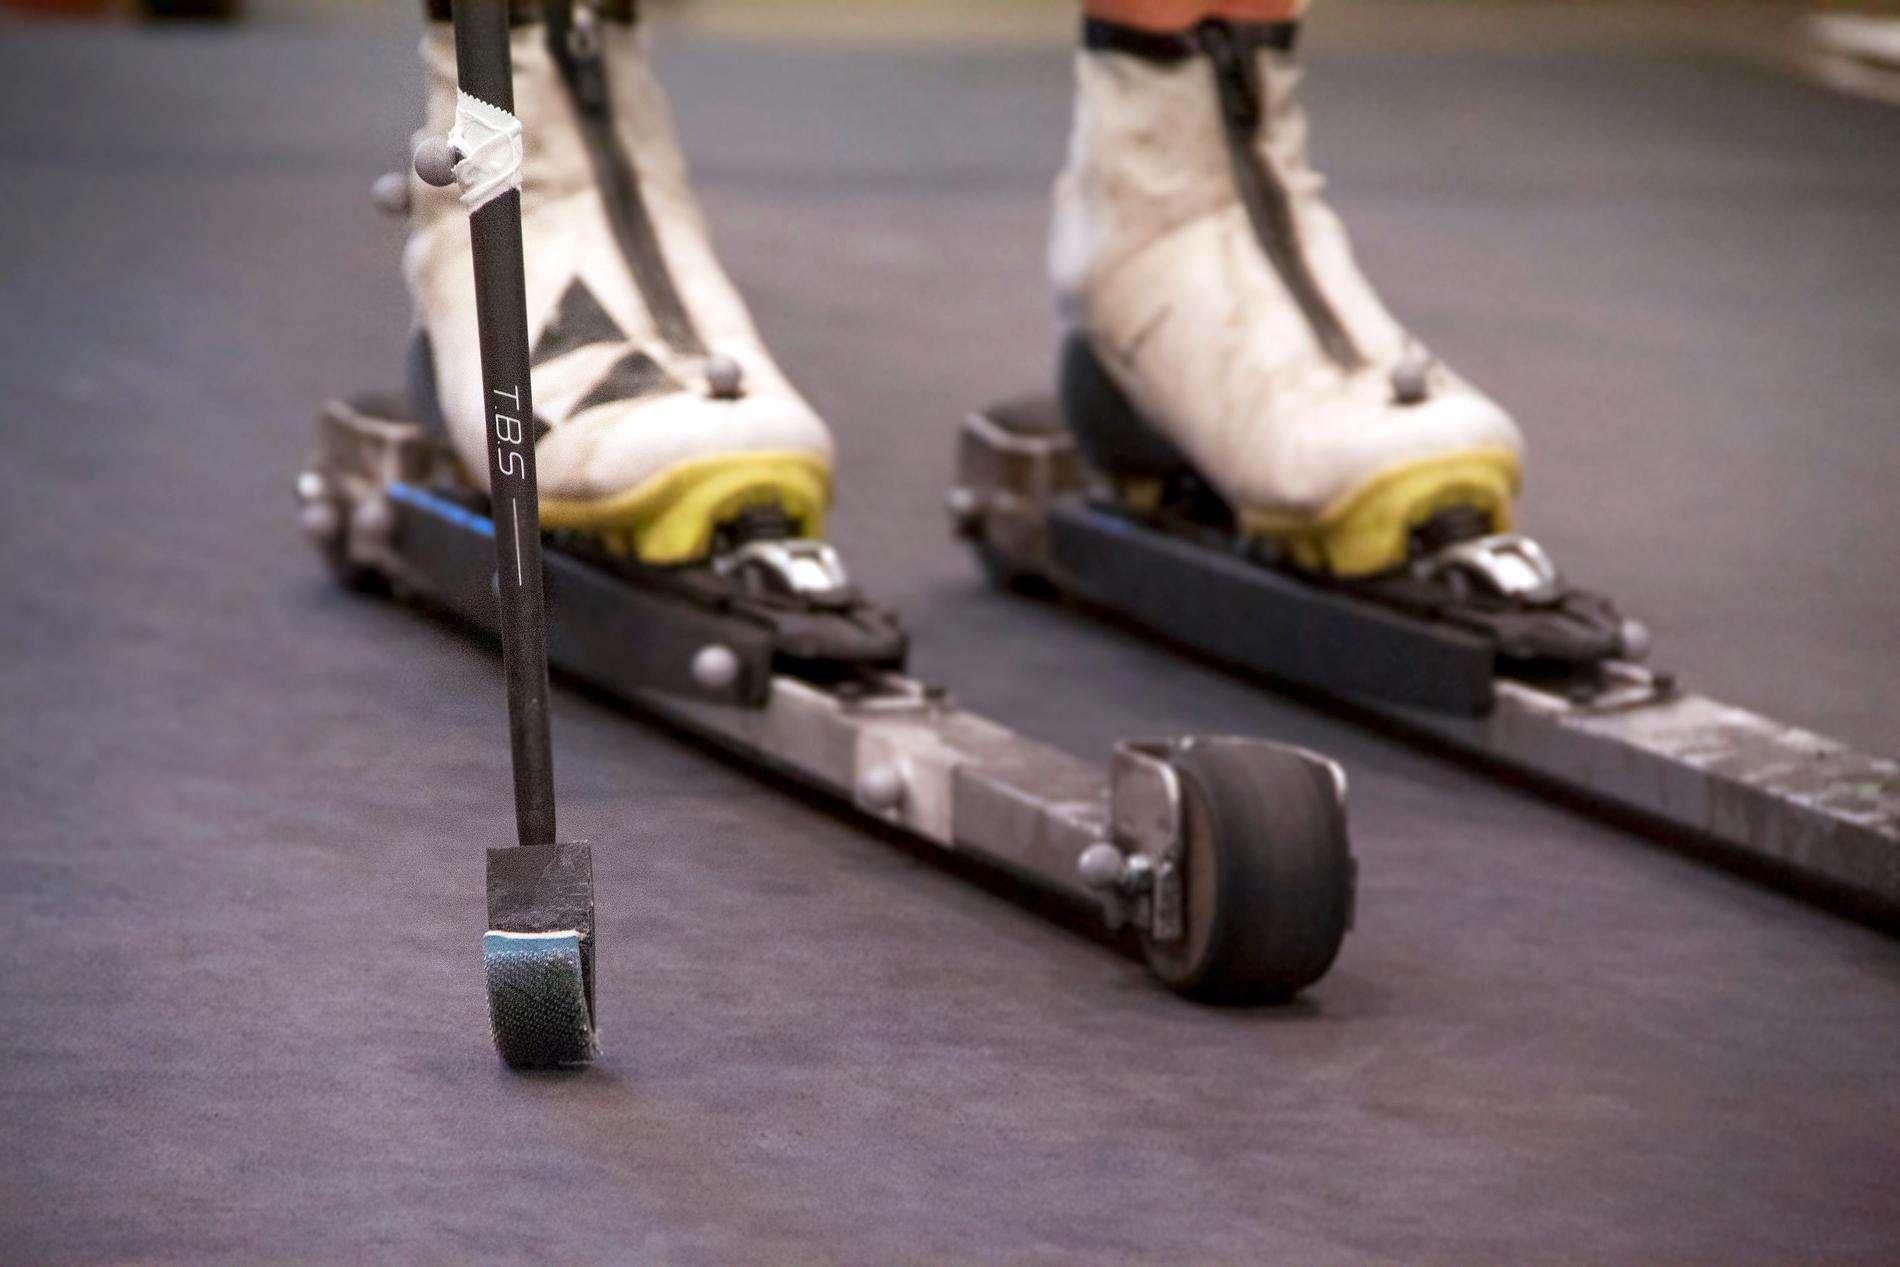 I coronatider har ishockeyspelarna större behov av att träna på barmark.